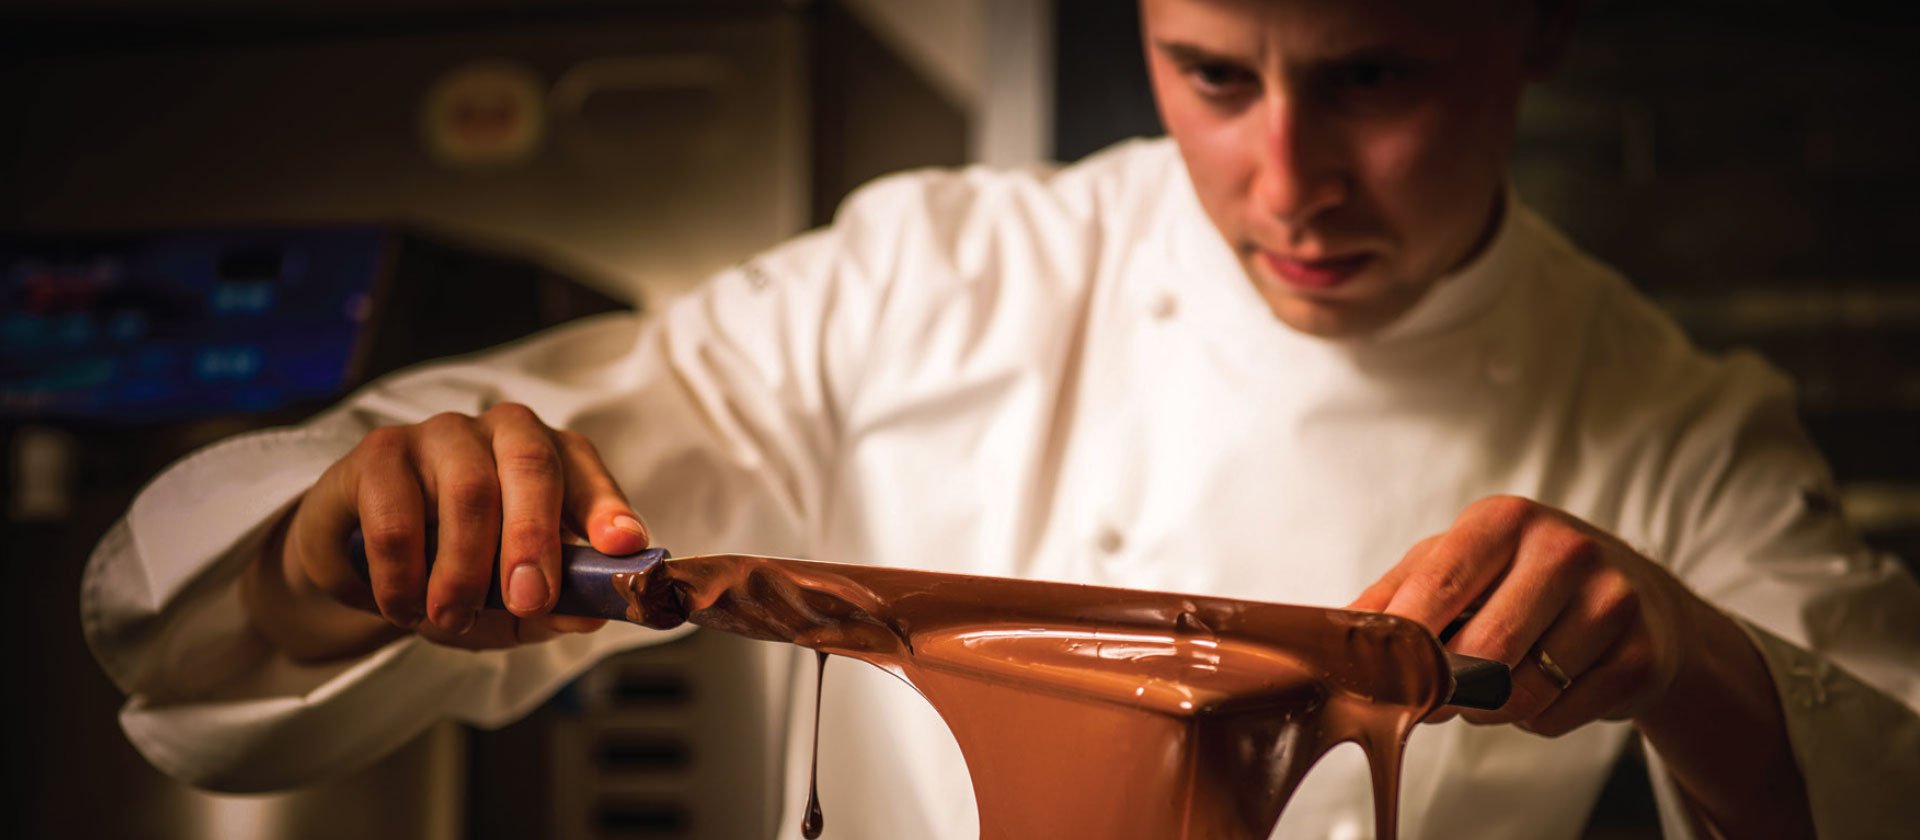 Le Cordon Bleu Melbourne Masterclass with Executive Pastry Chef & Chocolatier Deniz Karaca